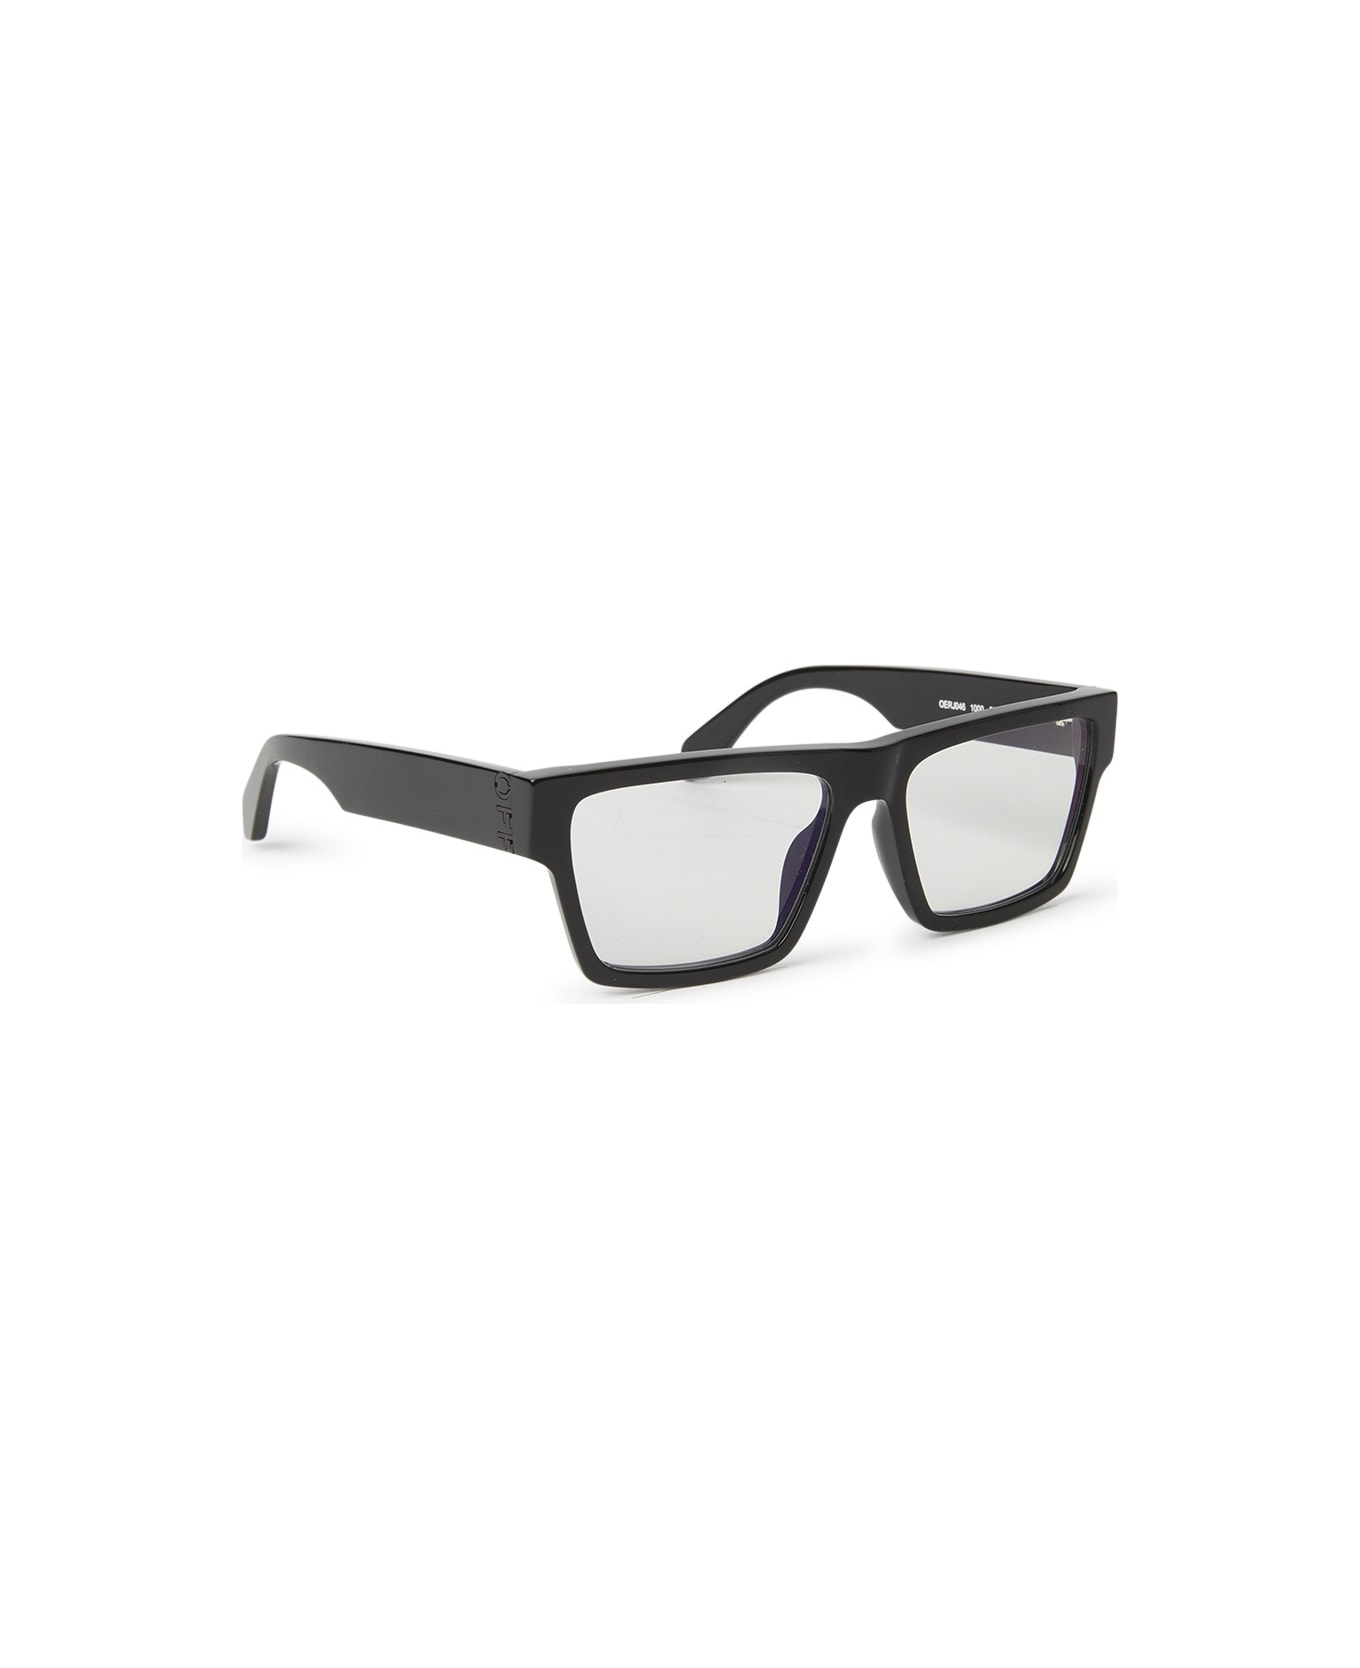 Off-White OERJ046 STYLE 46 Eyewear - Black アイウェア